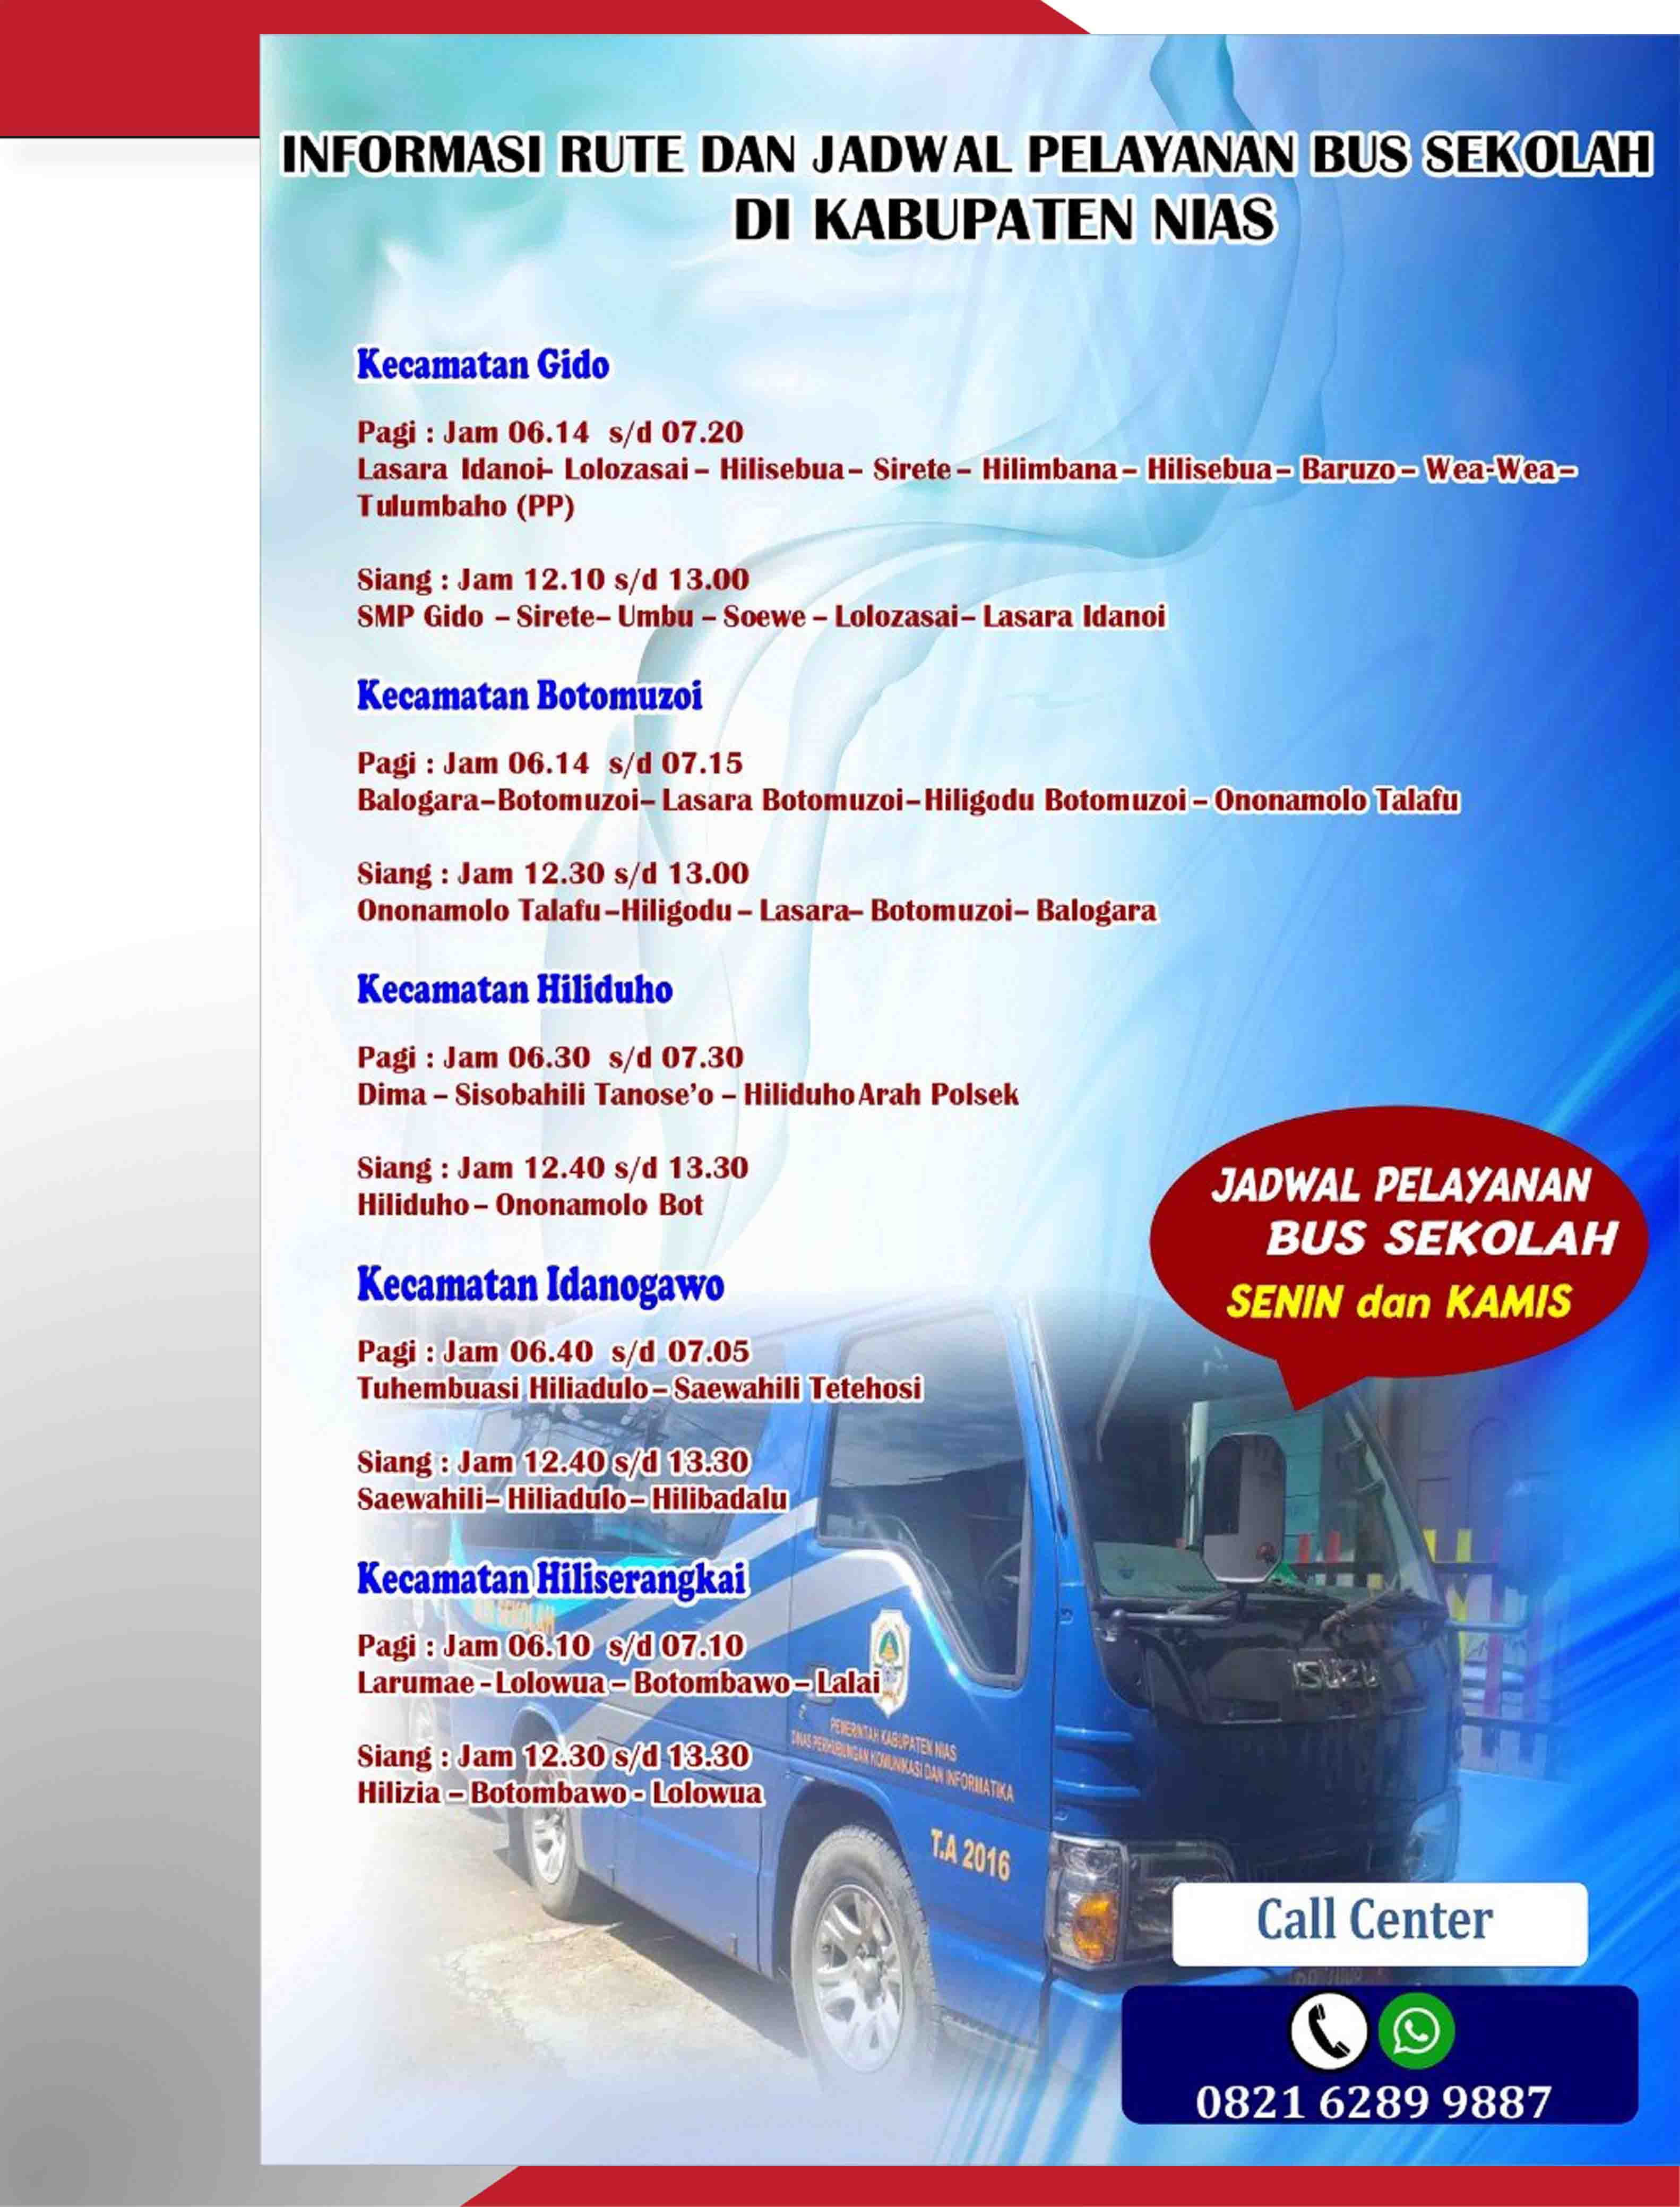 Rute dan jadwal pelayanan bus sekolah di Kabupaten Nias